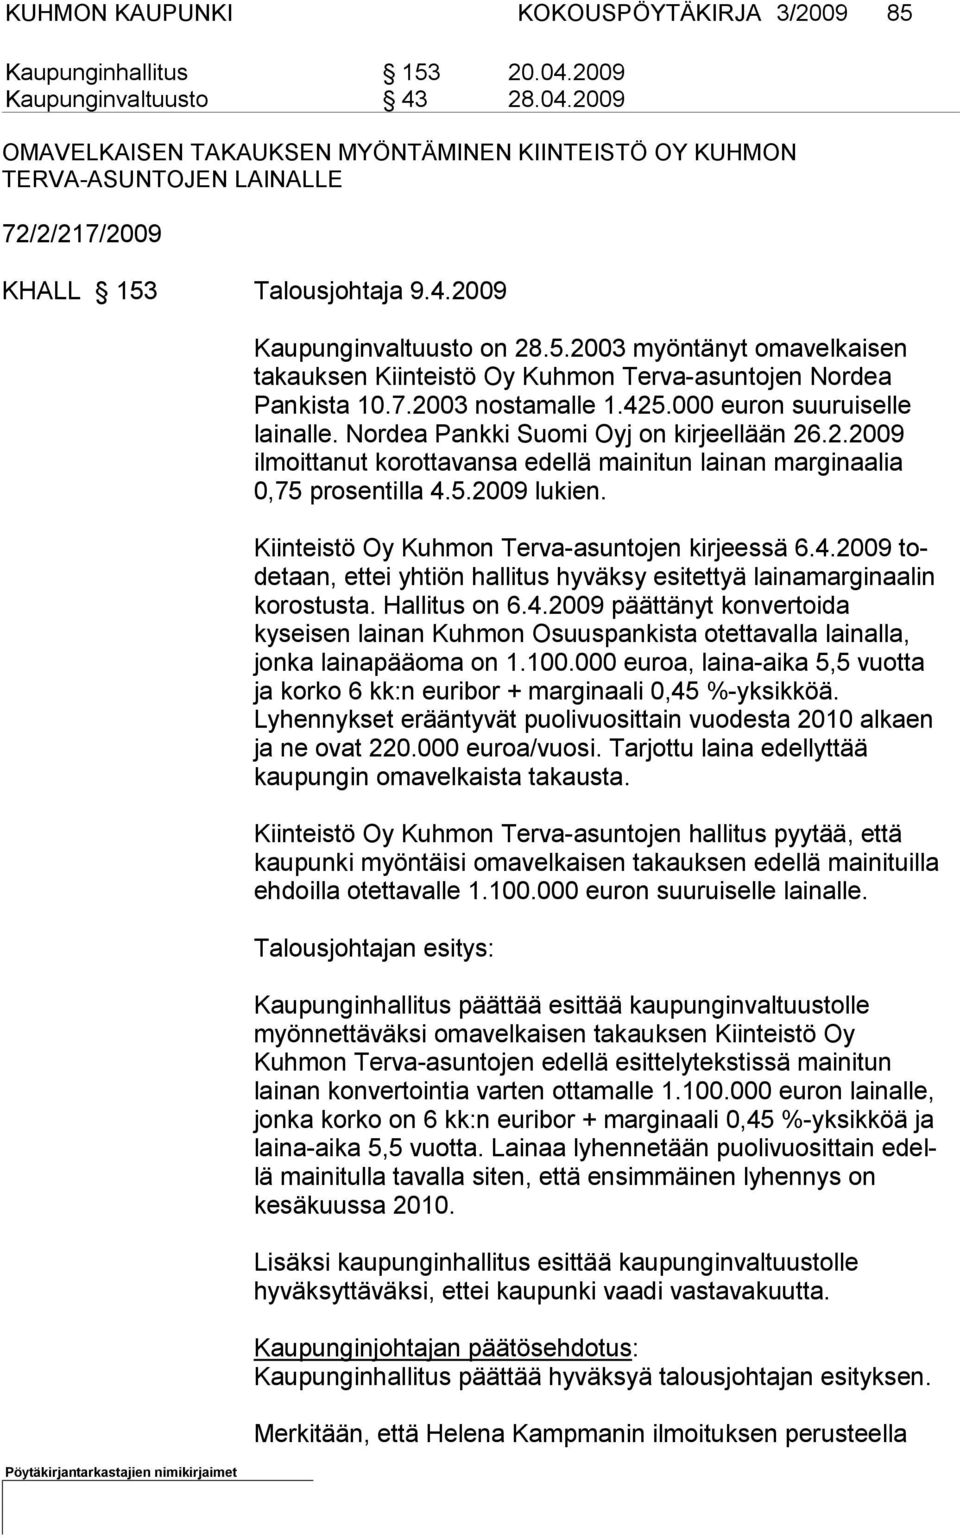 Nordea Pankki Suo mi Oyj on kirjeellään 26.2.2009 ilmoittanut korot tavansa edellä mai nitun lainan marginaalia 0,75 prosentilla 4.